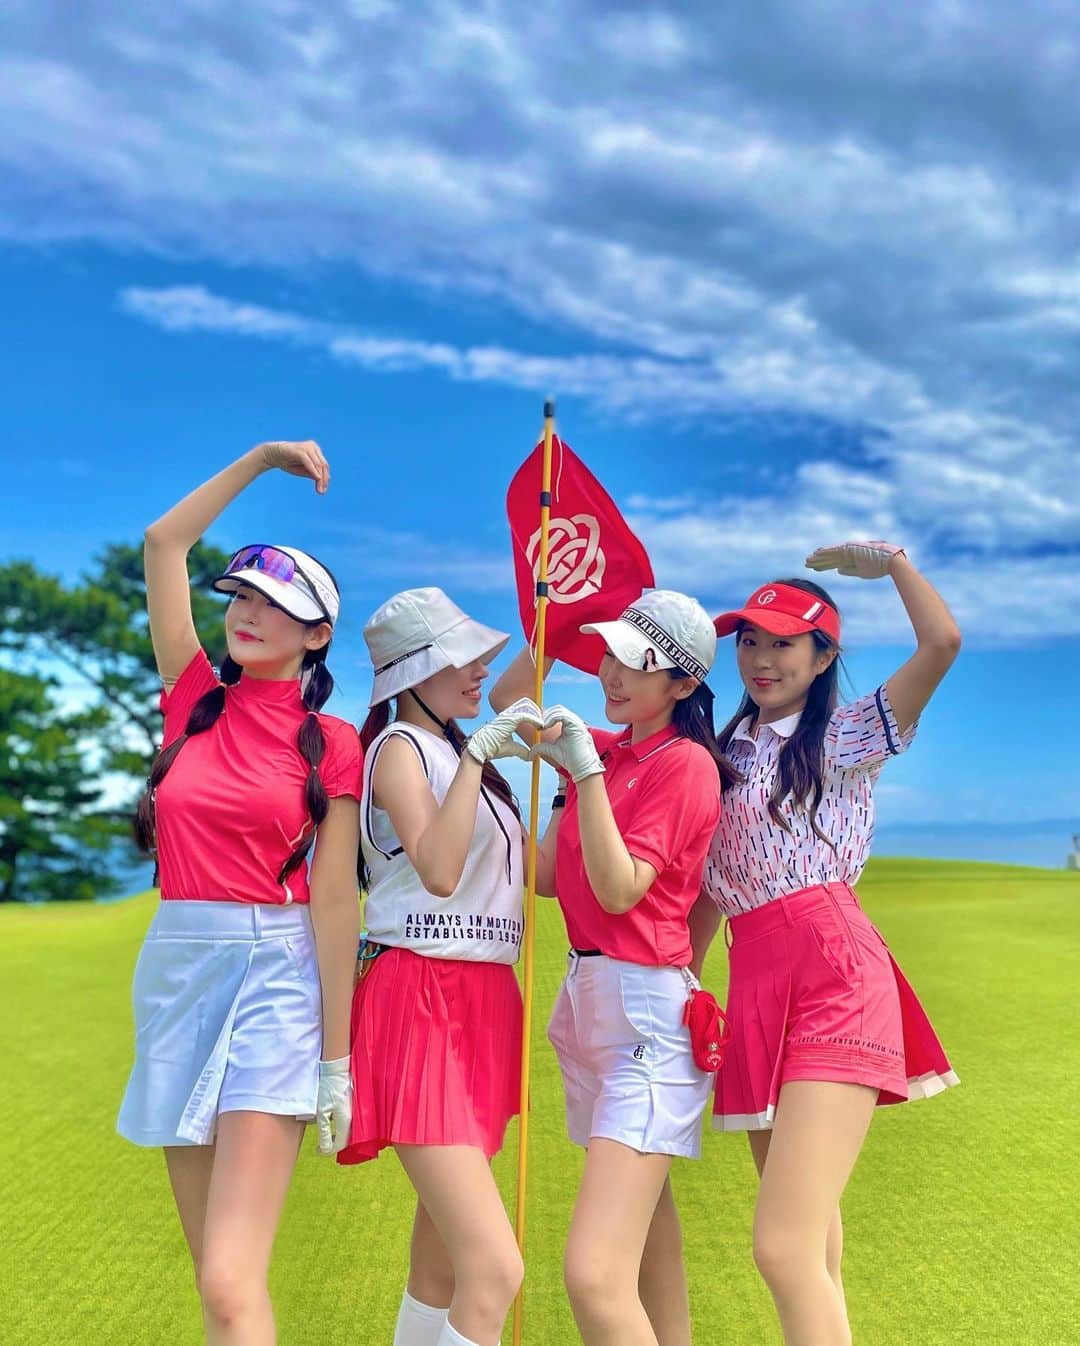 ミカのインスタグラム：「♡ 韓国のお友達とゴルフ⛳️  言葉は通じなくても 心は繋がっていたよん🥰🥰 いっぱい笑ったなぁ🫶🏻  みんな美しくて中身も可愛くて 一緒にいて沢山元気もらえた〜🩷  ウェアは韓国のゴルフブランド @fantom_sports だよ👩 4人でpink coordinate⛳️🩷  韓国でゴルフウェア見に行きたい〜 デザインが本当かわいい。  みんなからの可愛いプレゼント🎁 とても嬉しい😭大切にするね♡  次は韓国で会いましょーう😘 早く計画しなきゃっ  #협찬 #팬텀클러버 #FANTOMCLOVER #팬텀골프 #팬텀스포츠 #韓国ゴルフウェア#韓国ゴルフ#ゴルフ女子#ゴルフウェアレディース#ゴルフコーデ#大阪ゴルフクラブ#関西ゴルフ女子#ゴルフ場#ゴルフファッション#日韓交流#fantom#골프#ピンクコーデ#ゴルフ女子コーデ」